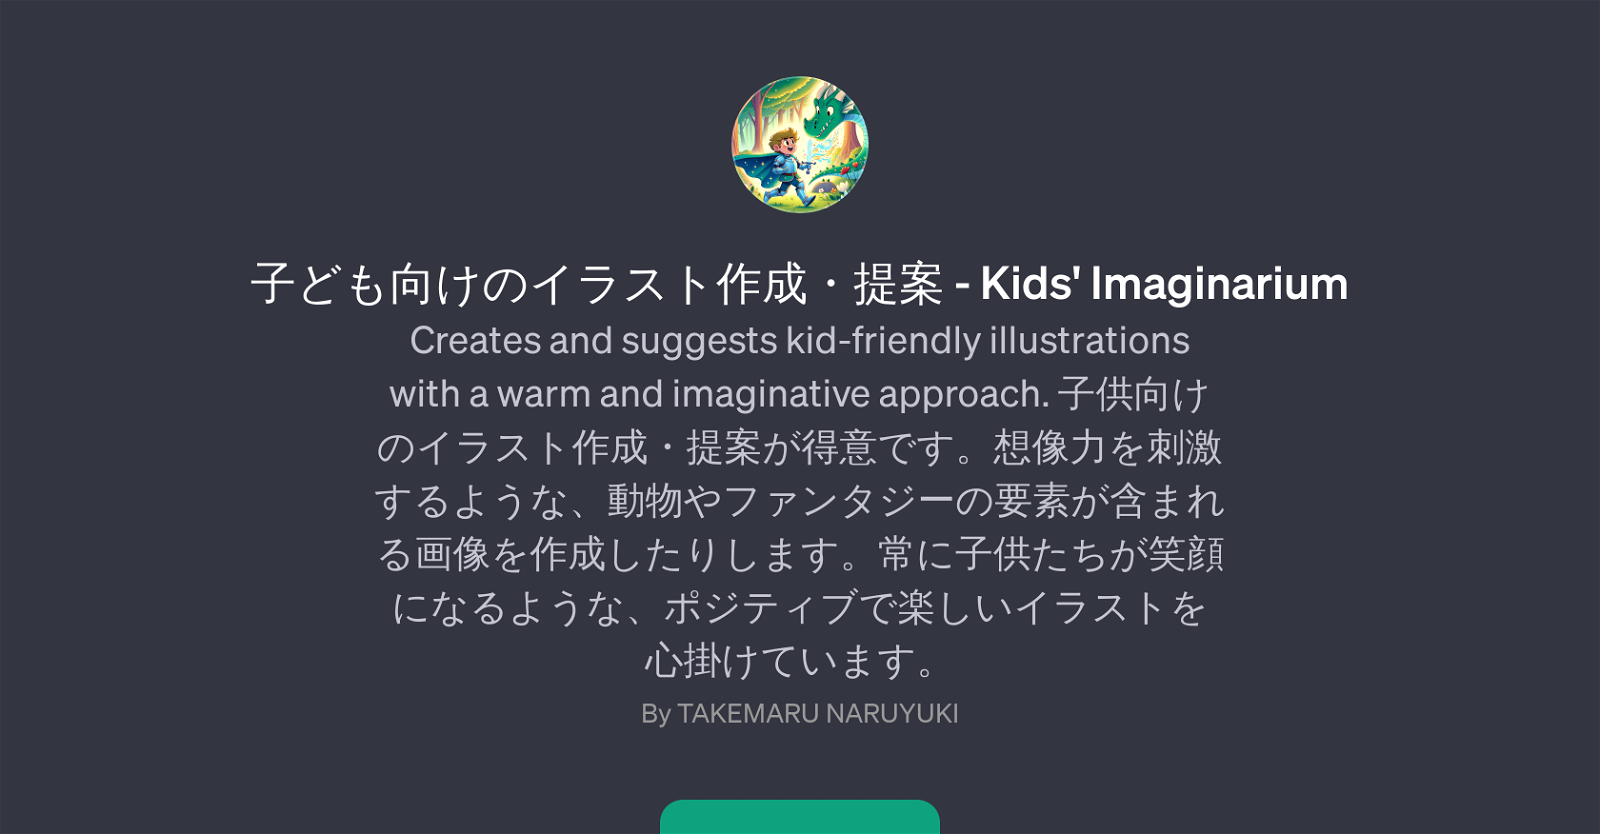 Kids' Imaginarium website